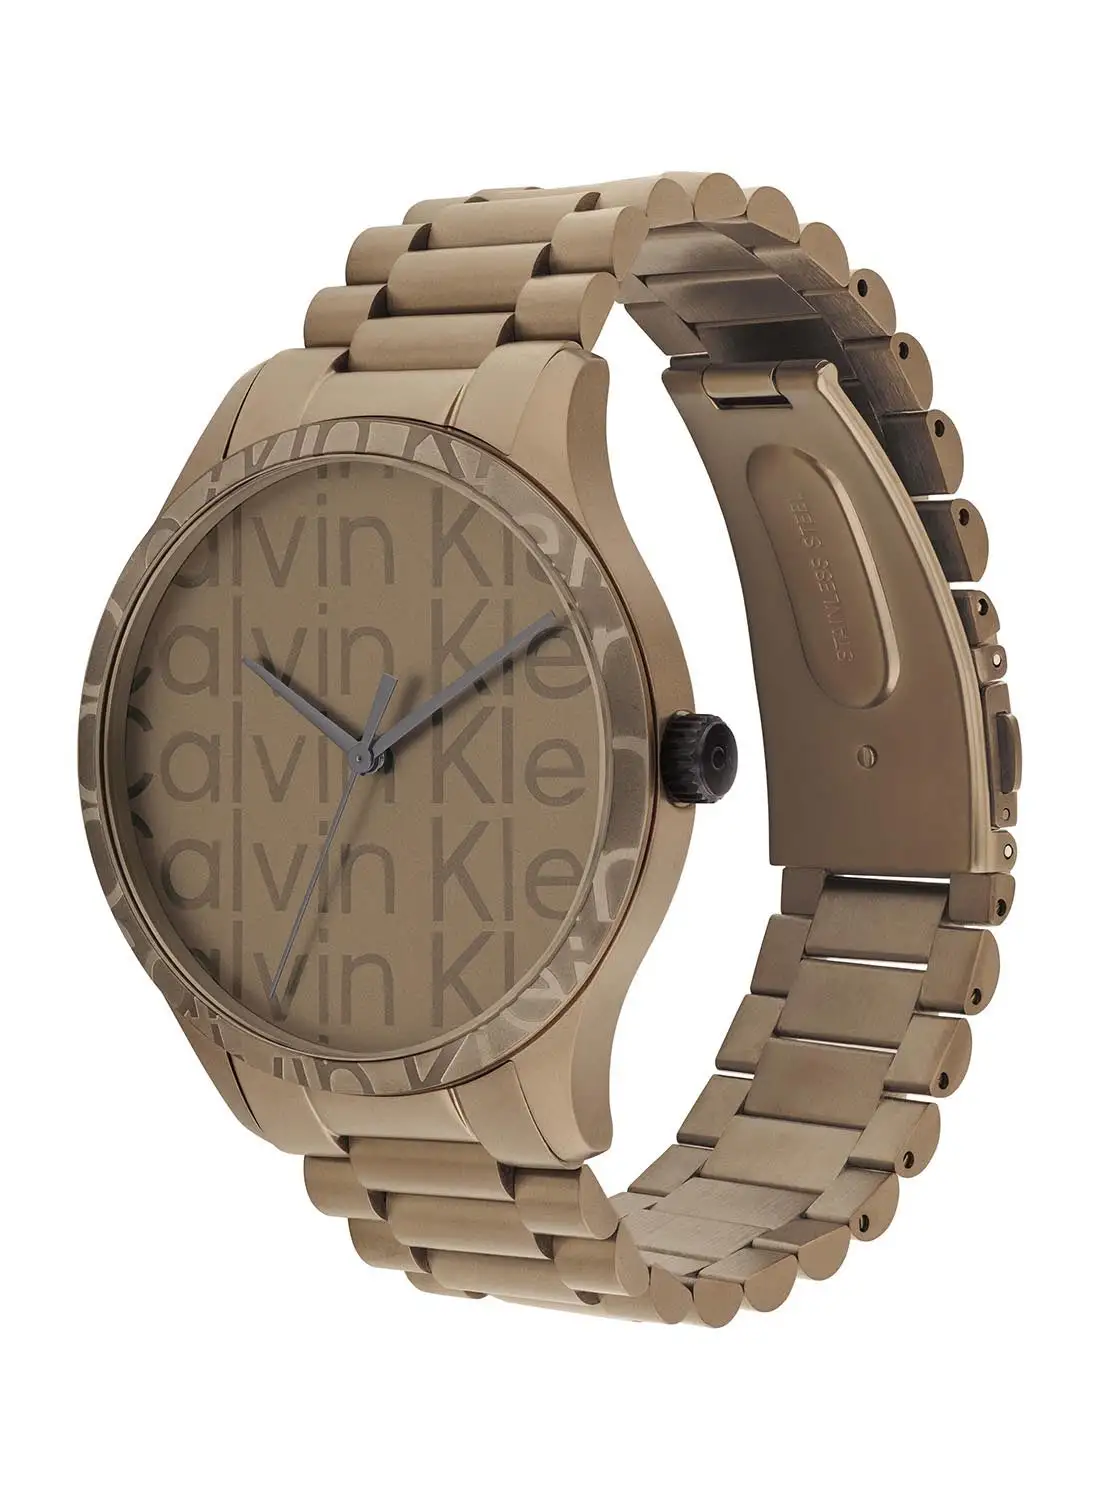 CALVIN KLEIN Unisex Analog Round Shape Stainless Steel Wrist Watch 25200343 - 42 Mm